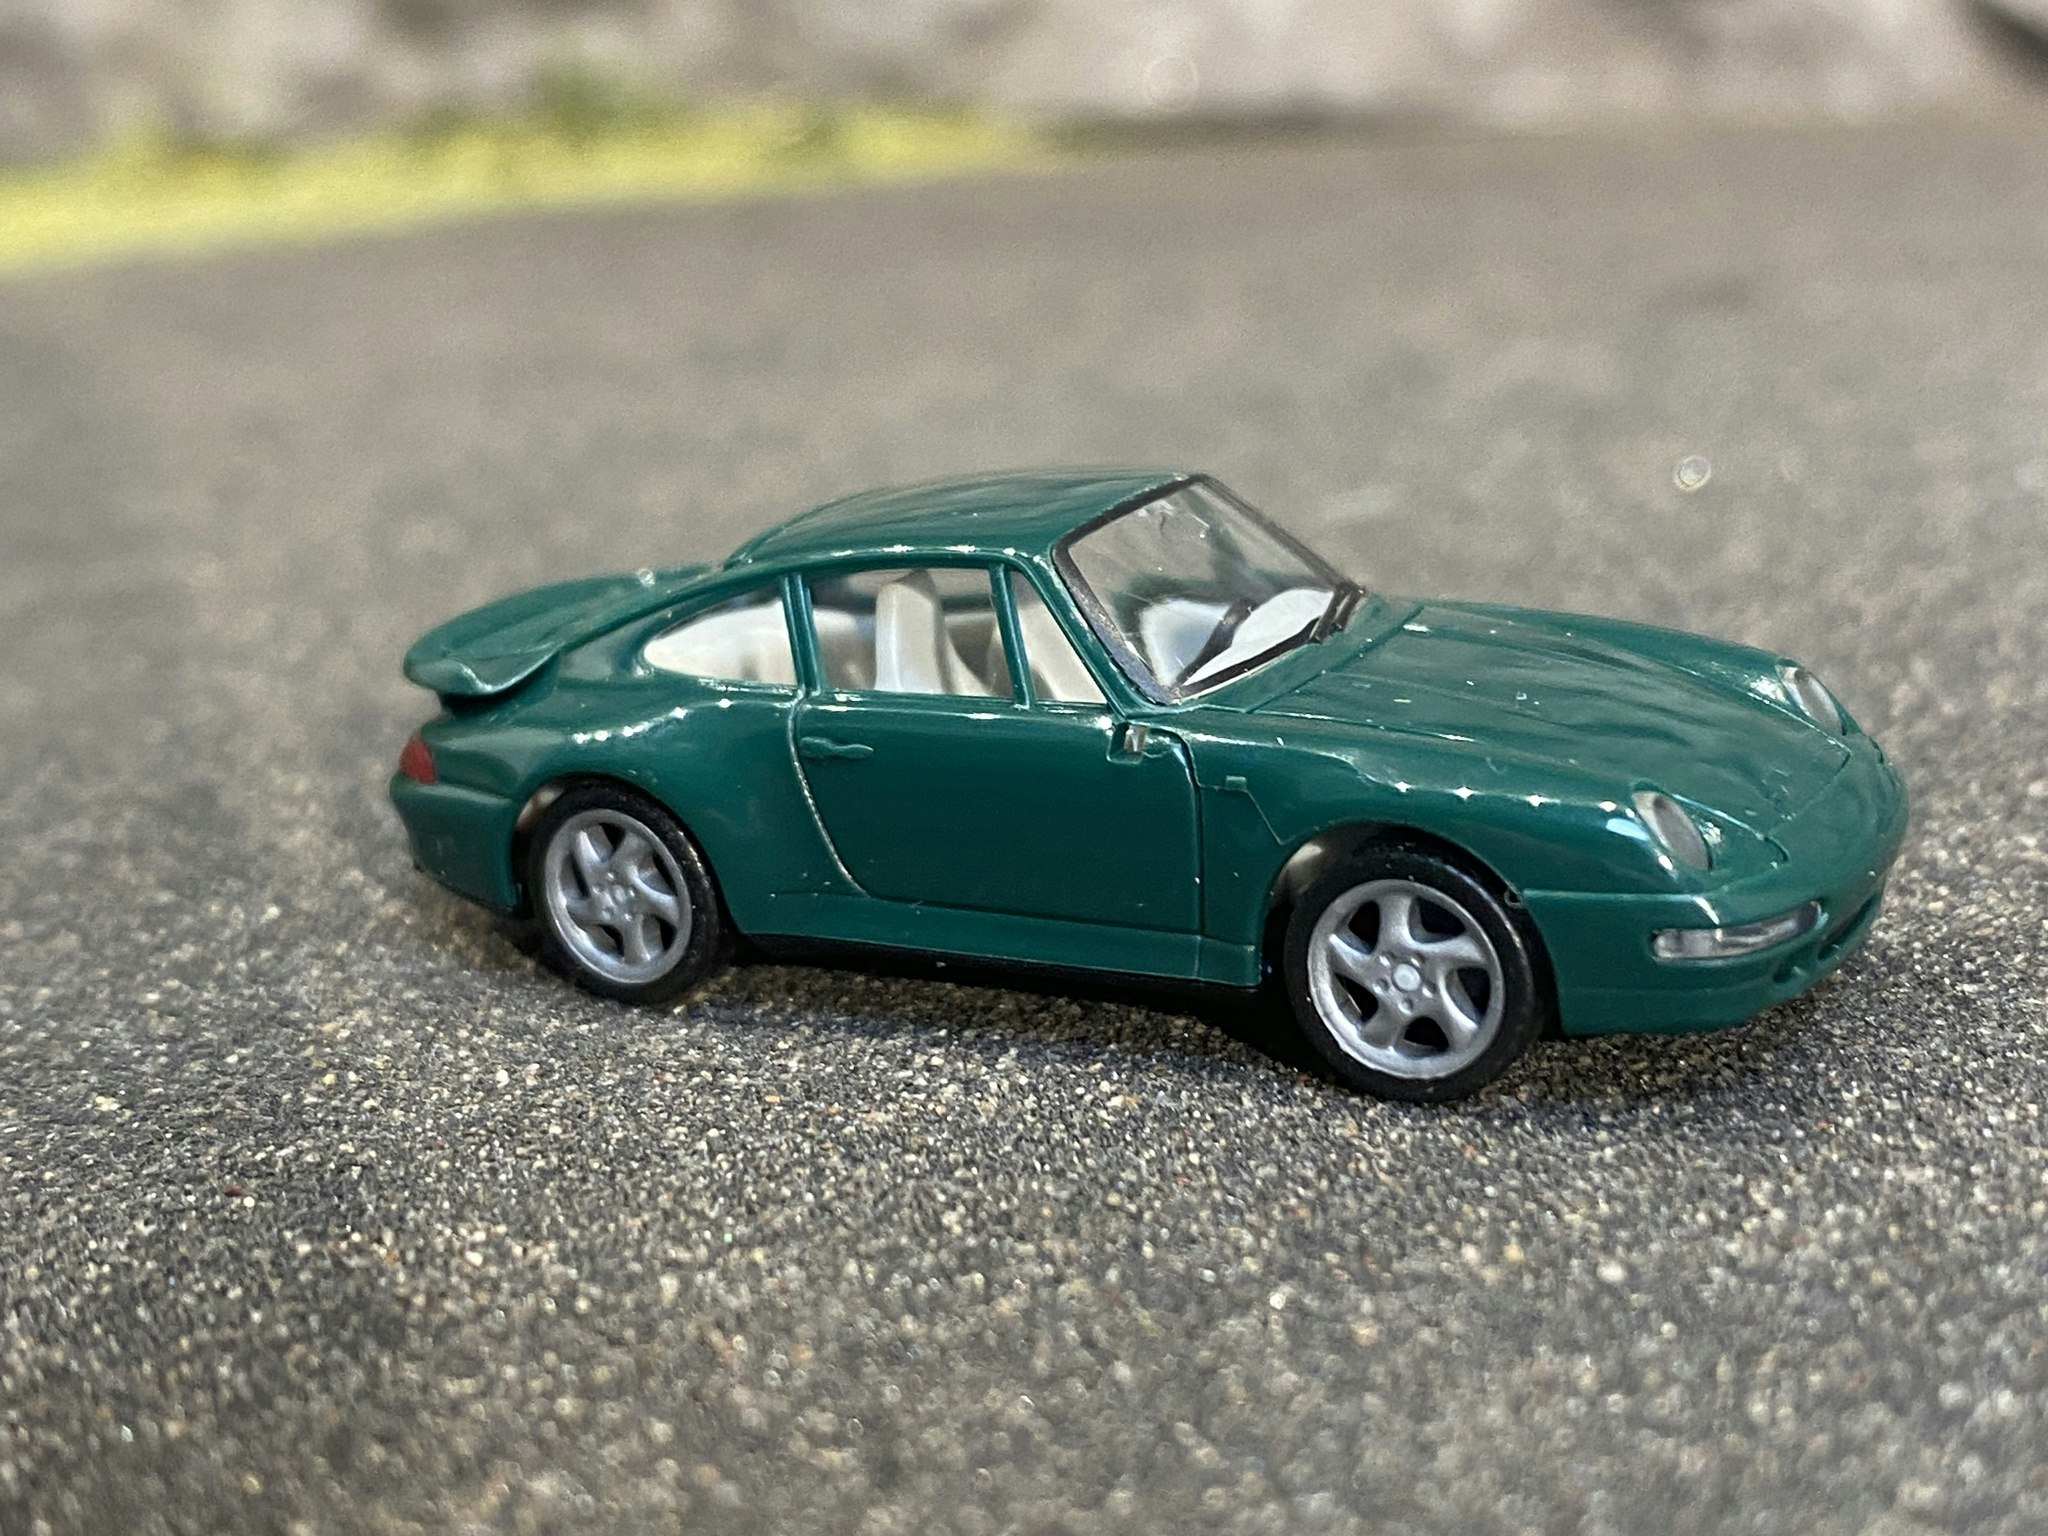 Skala 1/87 - Porsche 911, 95' Grön från Herpa, Skrot?! Obs saknar sidospegel!